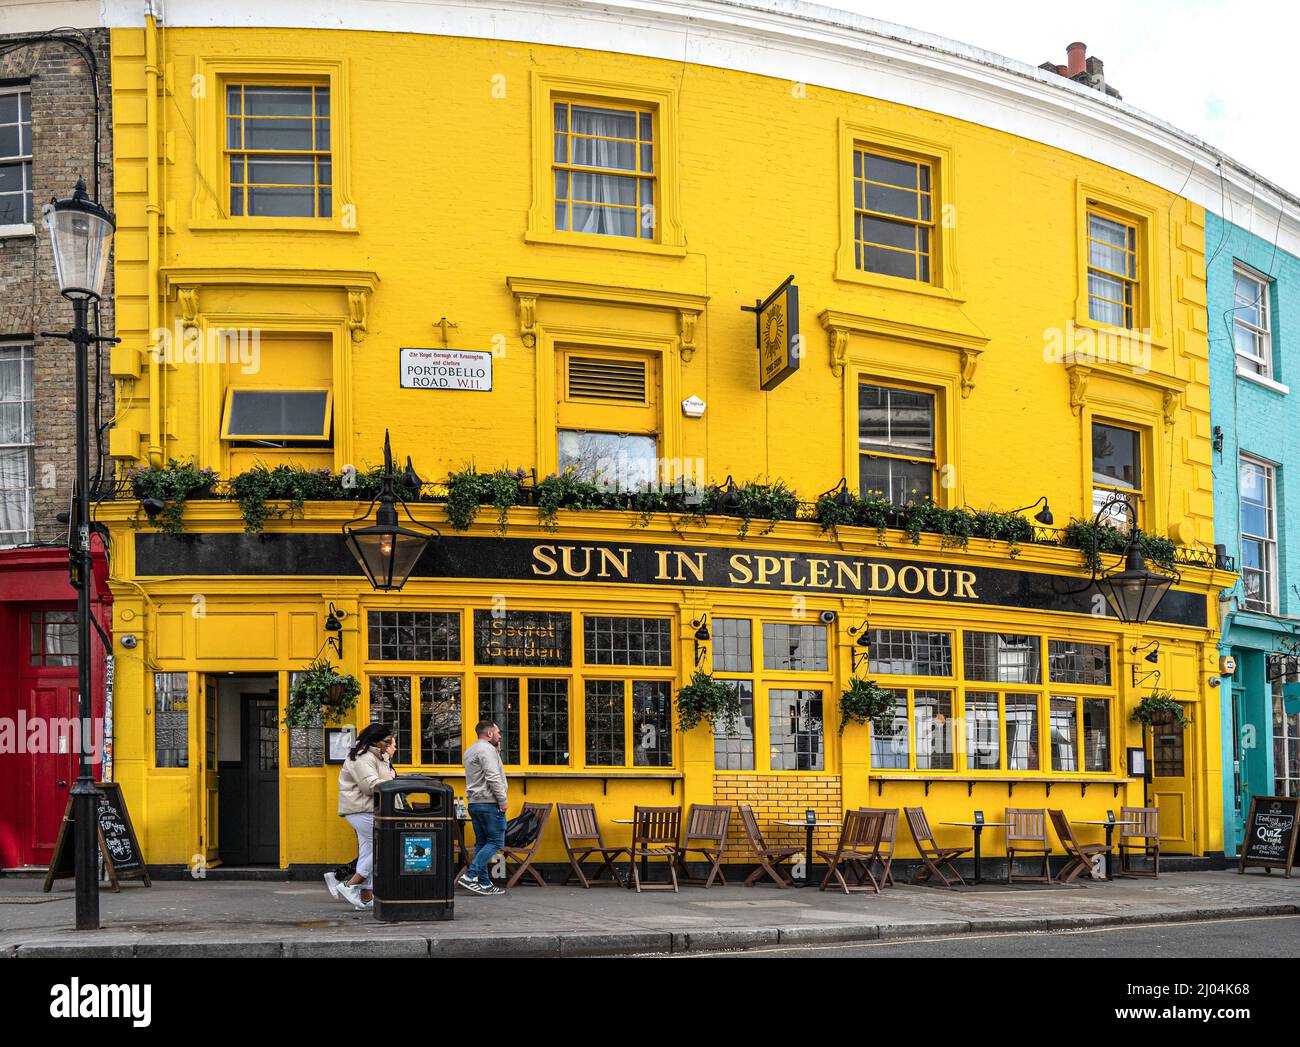 Soleil dans la splendeur de la maison publique, Portobello Road, Notting Hill, Londres Banque D'Images